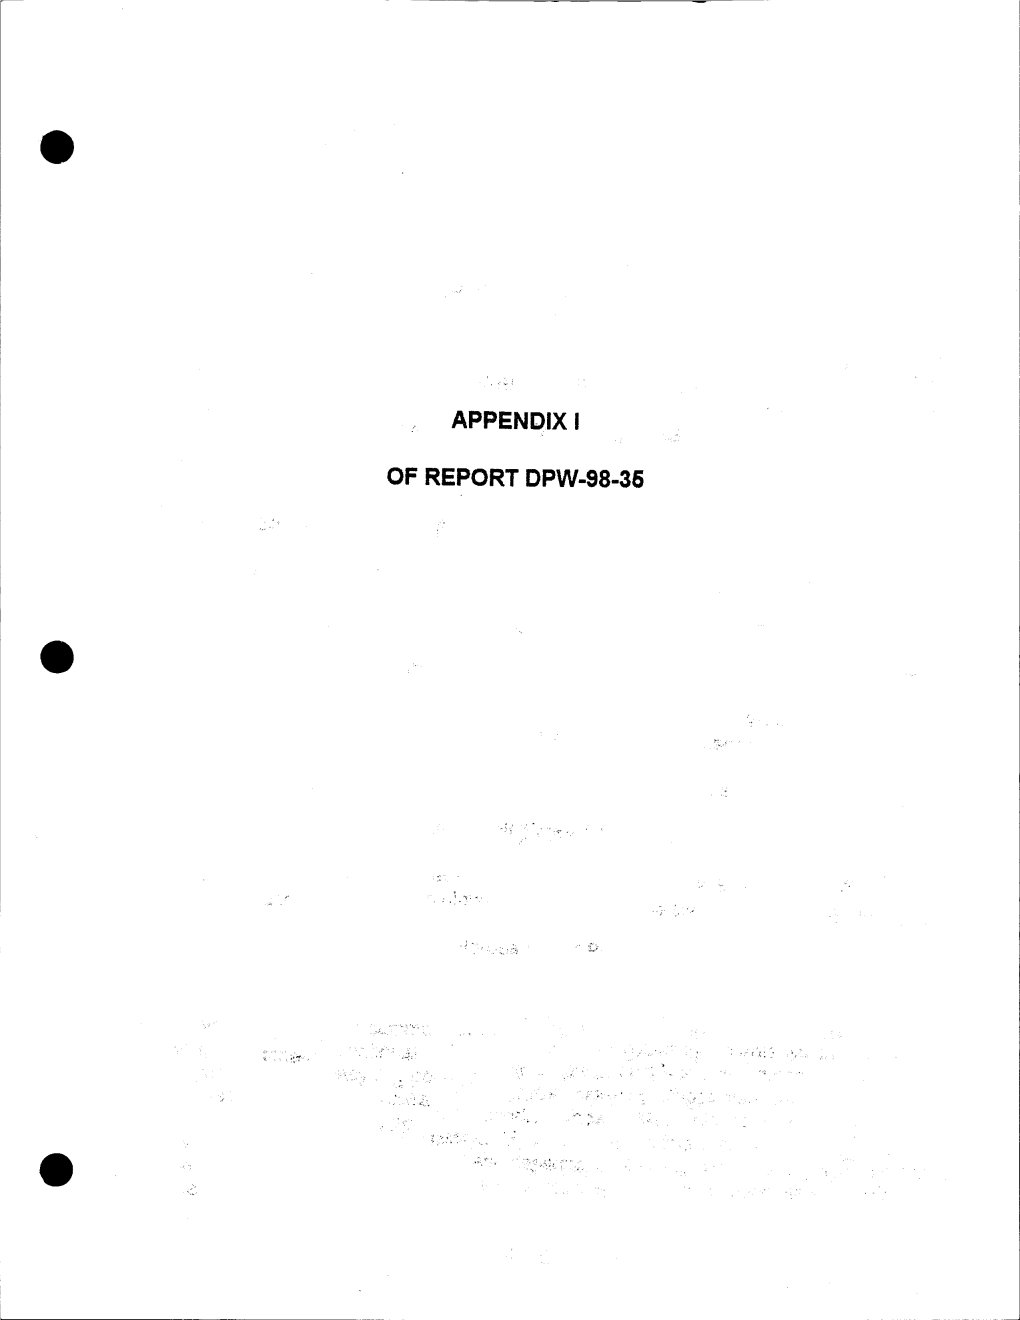 Appendix to Report DPW-98-35